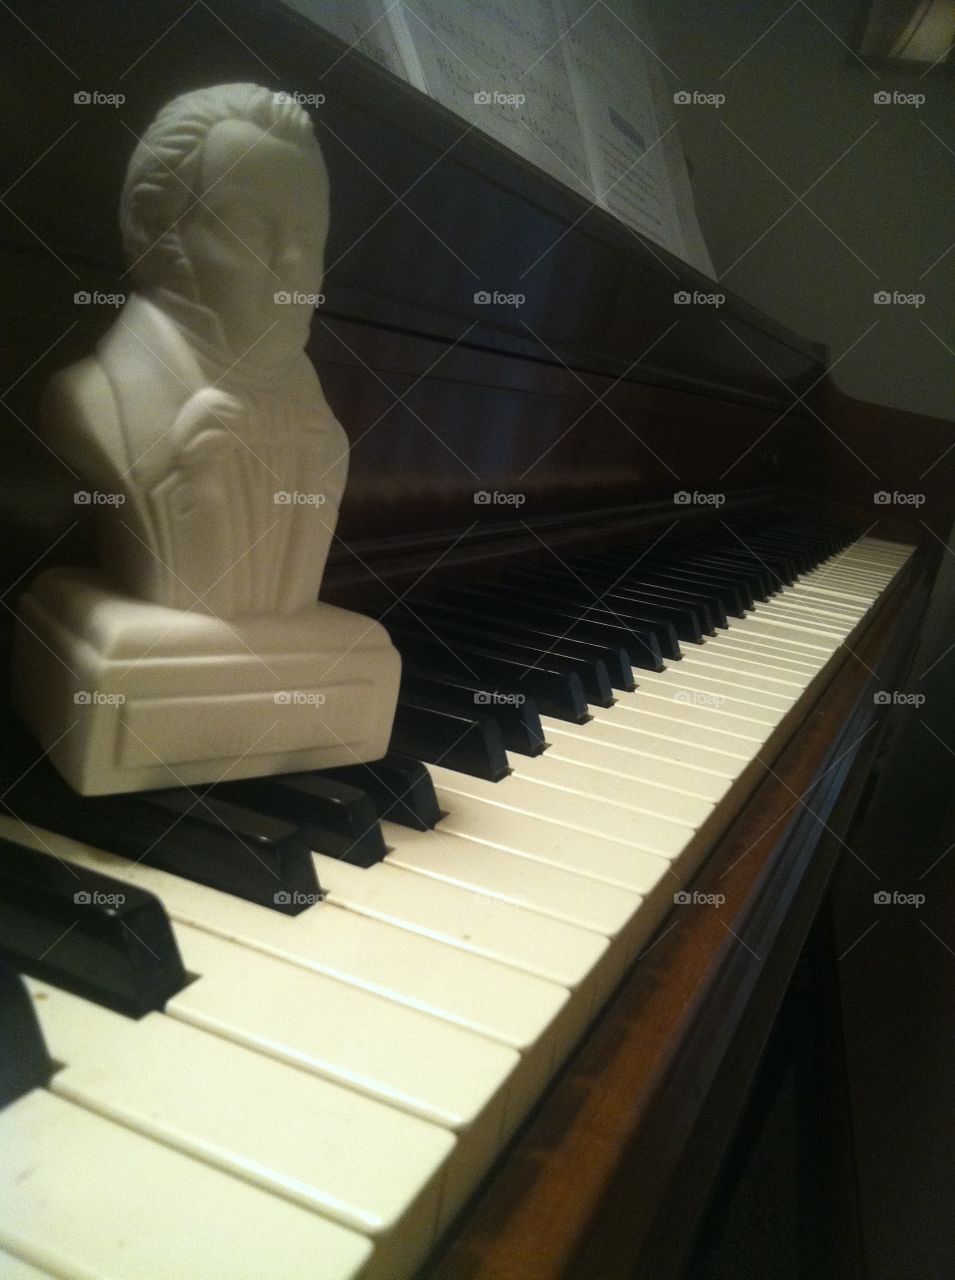 Schubert's keys